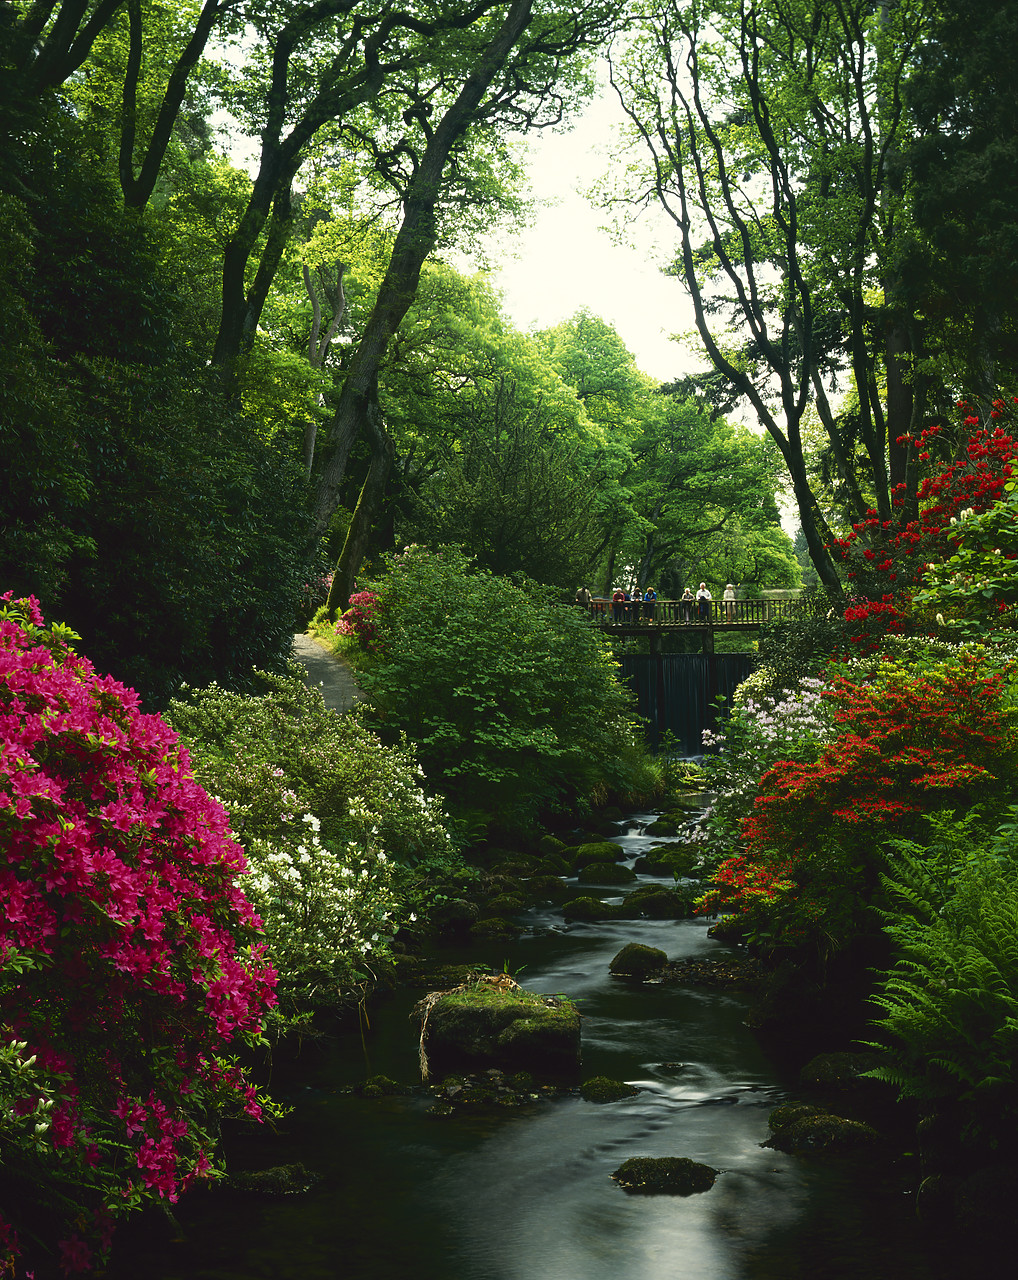 #881330-1 - Rhododendrons on River Hiraethlyn, Bodnant Gardens, Gwynedd. Wales